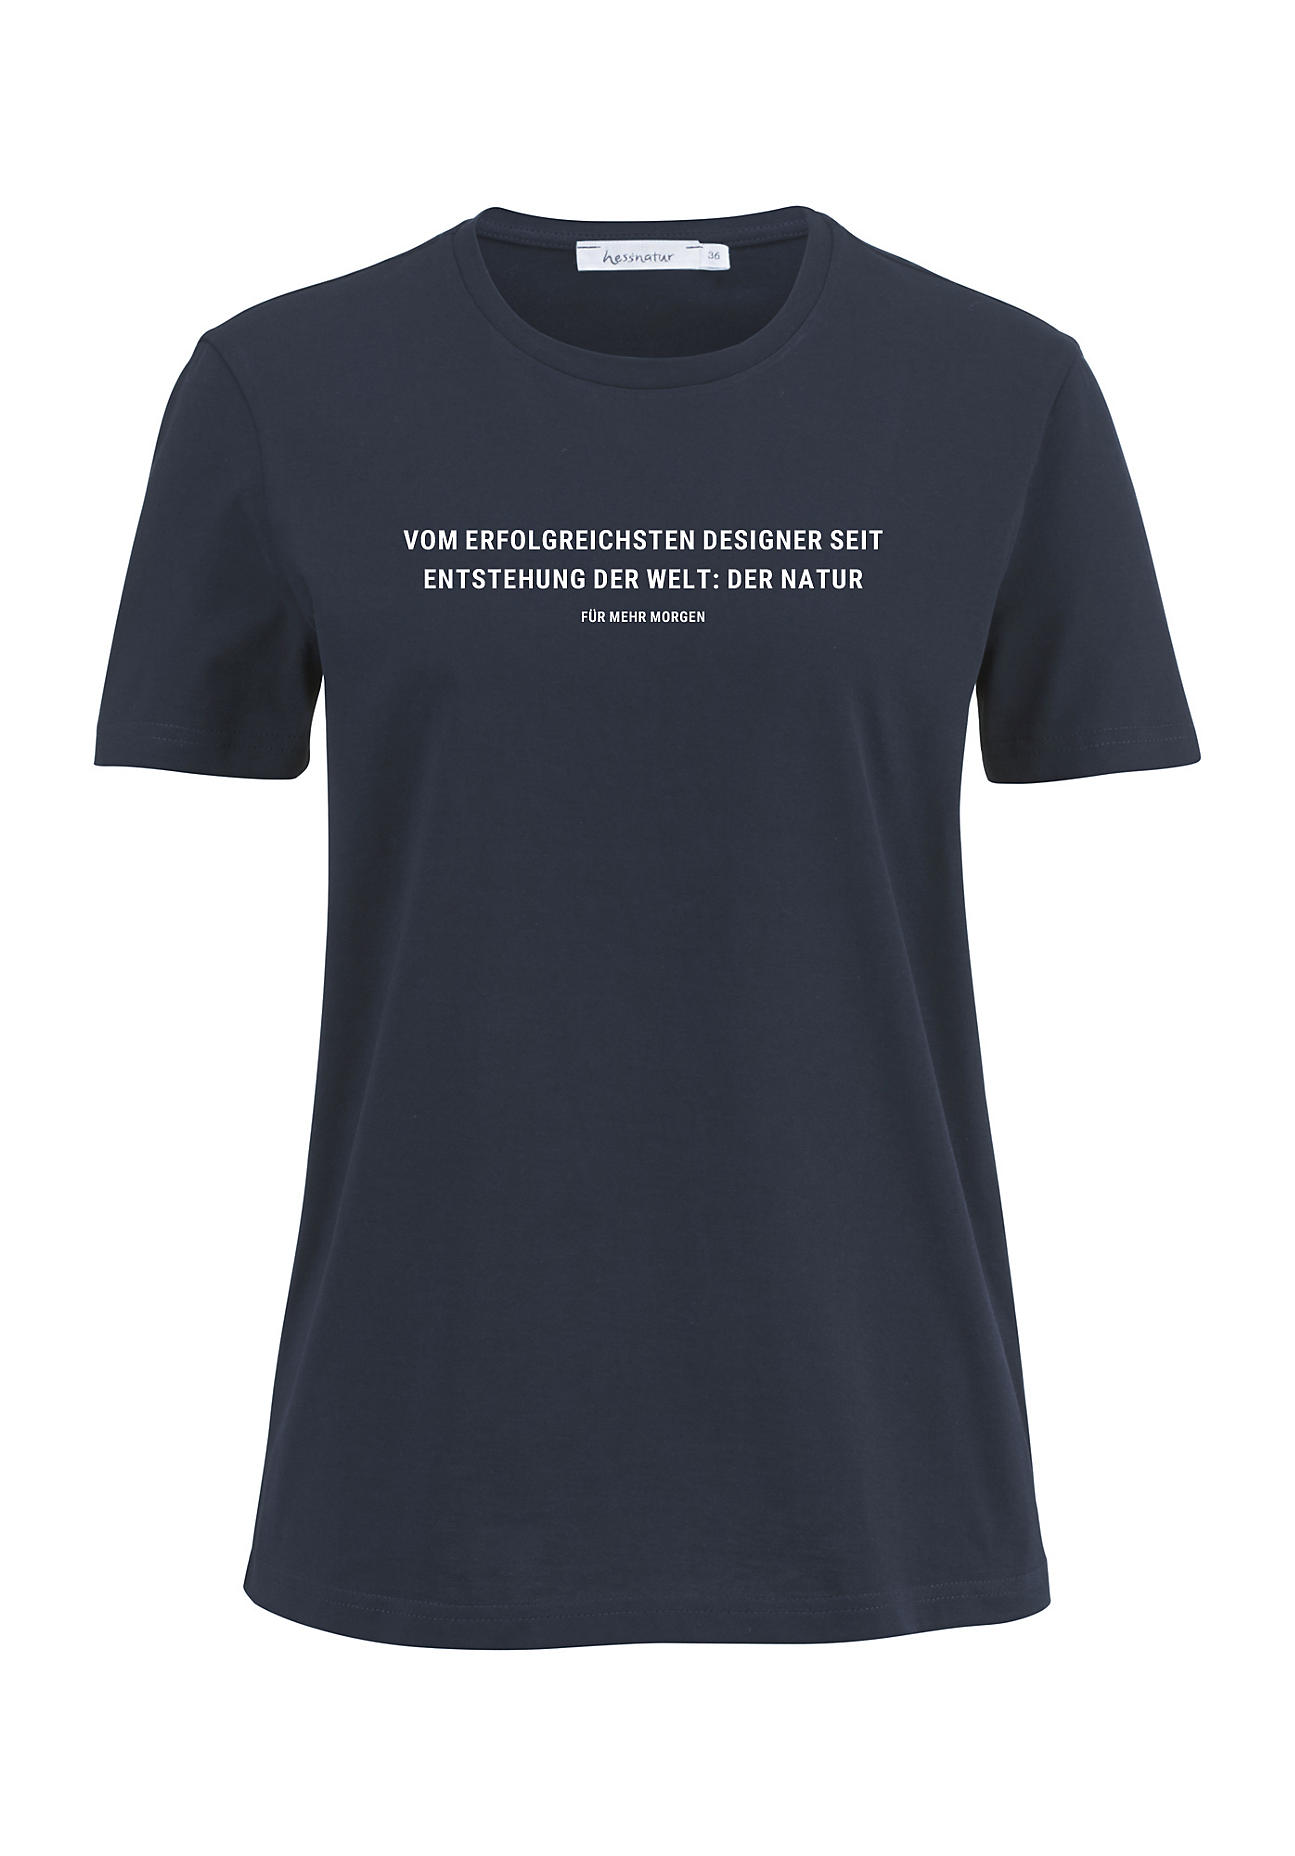 hessnatur Damen Statement Shirt aus Bio-Baumwolle - blau - Größe 42